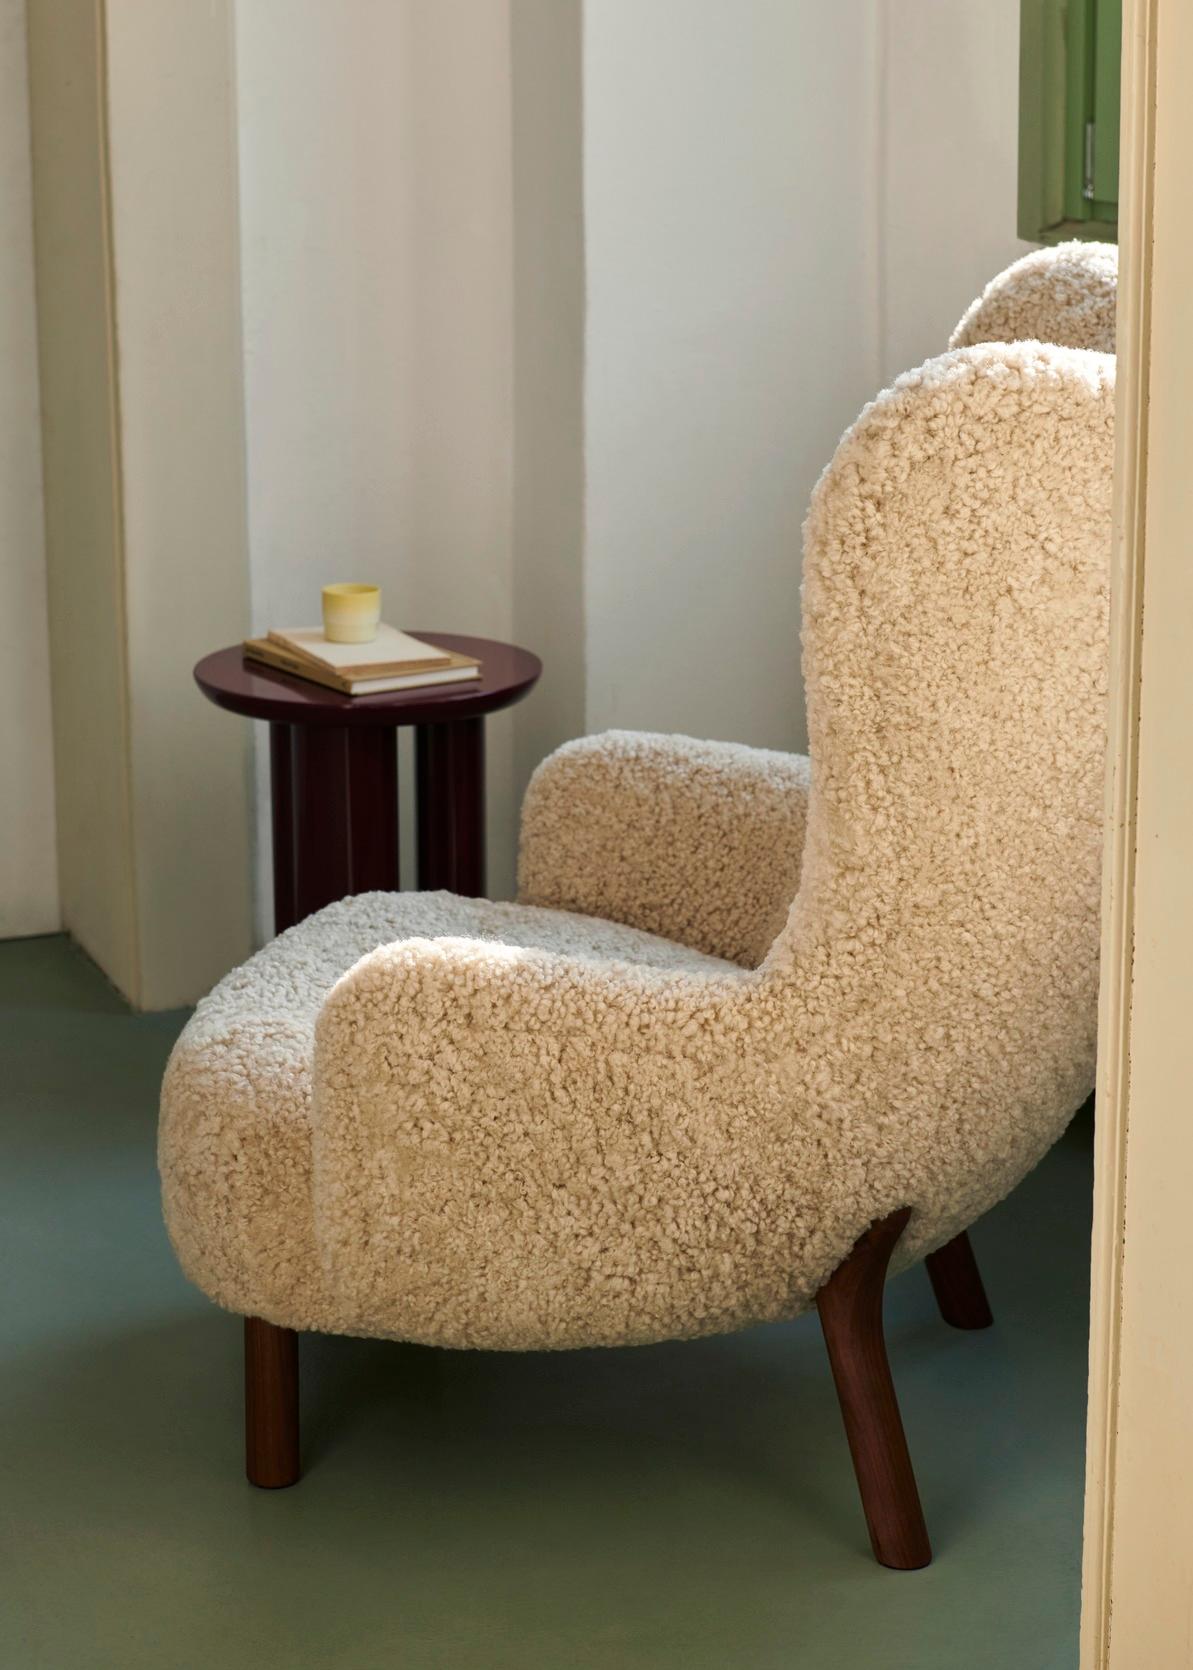 Inspiré d'un modèle original conçu par le designer danois Viggo Boesen en 1938, Petra est un fauteuil de salon au dossier haut et ailé, d'un confort inégalé. 
Le fauteuil Petra fait suite au grand succès de Little Petra, nommé d'après la belle-mère